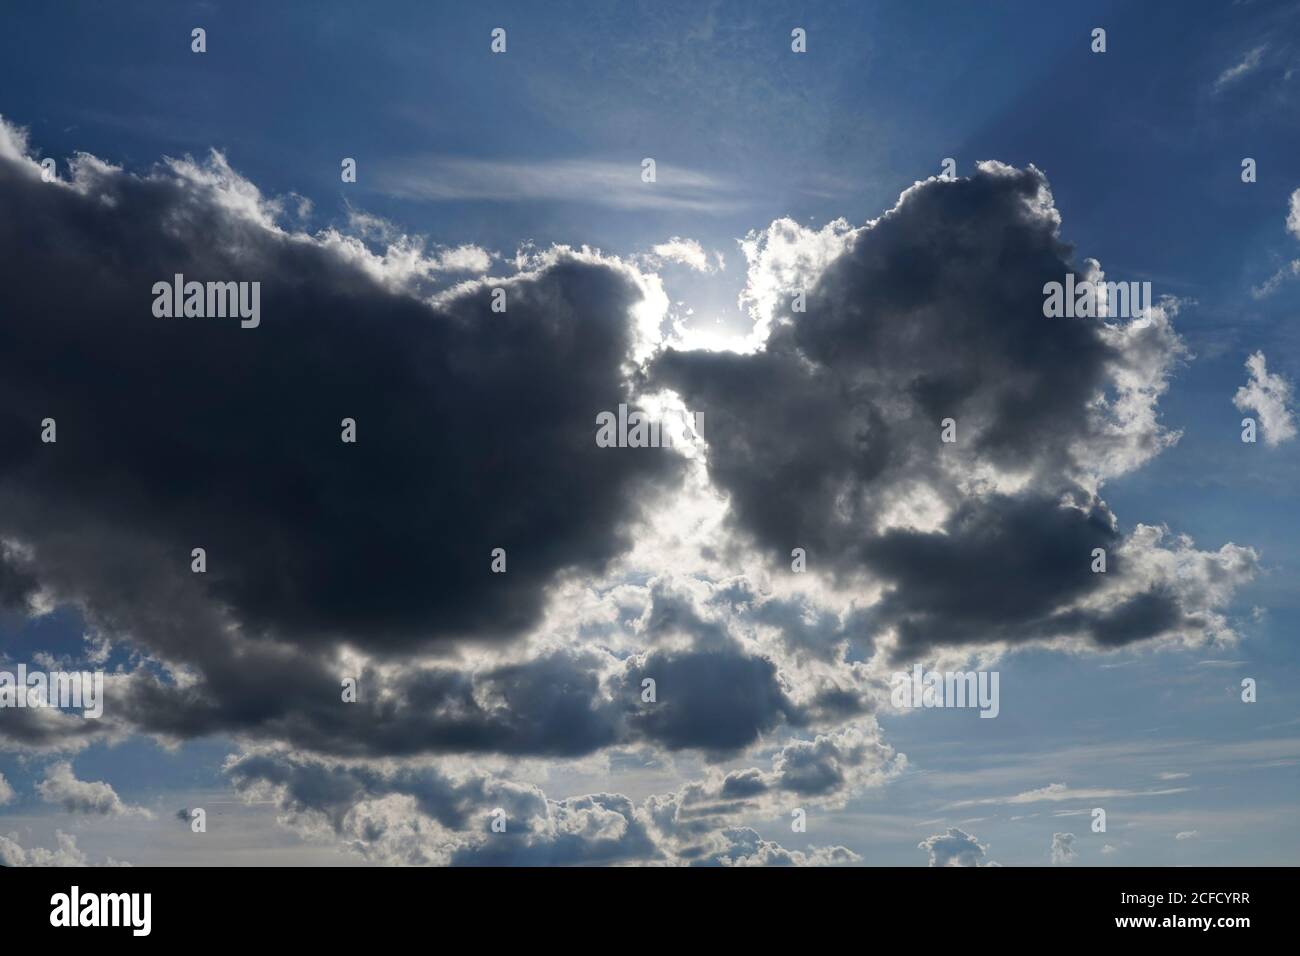 Deutschland, Bayern, Oberbayern, Altötting, Wolkenbildung, Sonne hinter dunklen Regenwolken, Nimbostratus Stockfoto